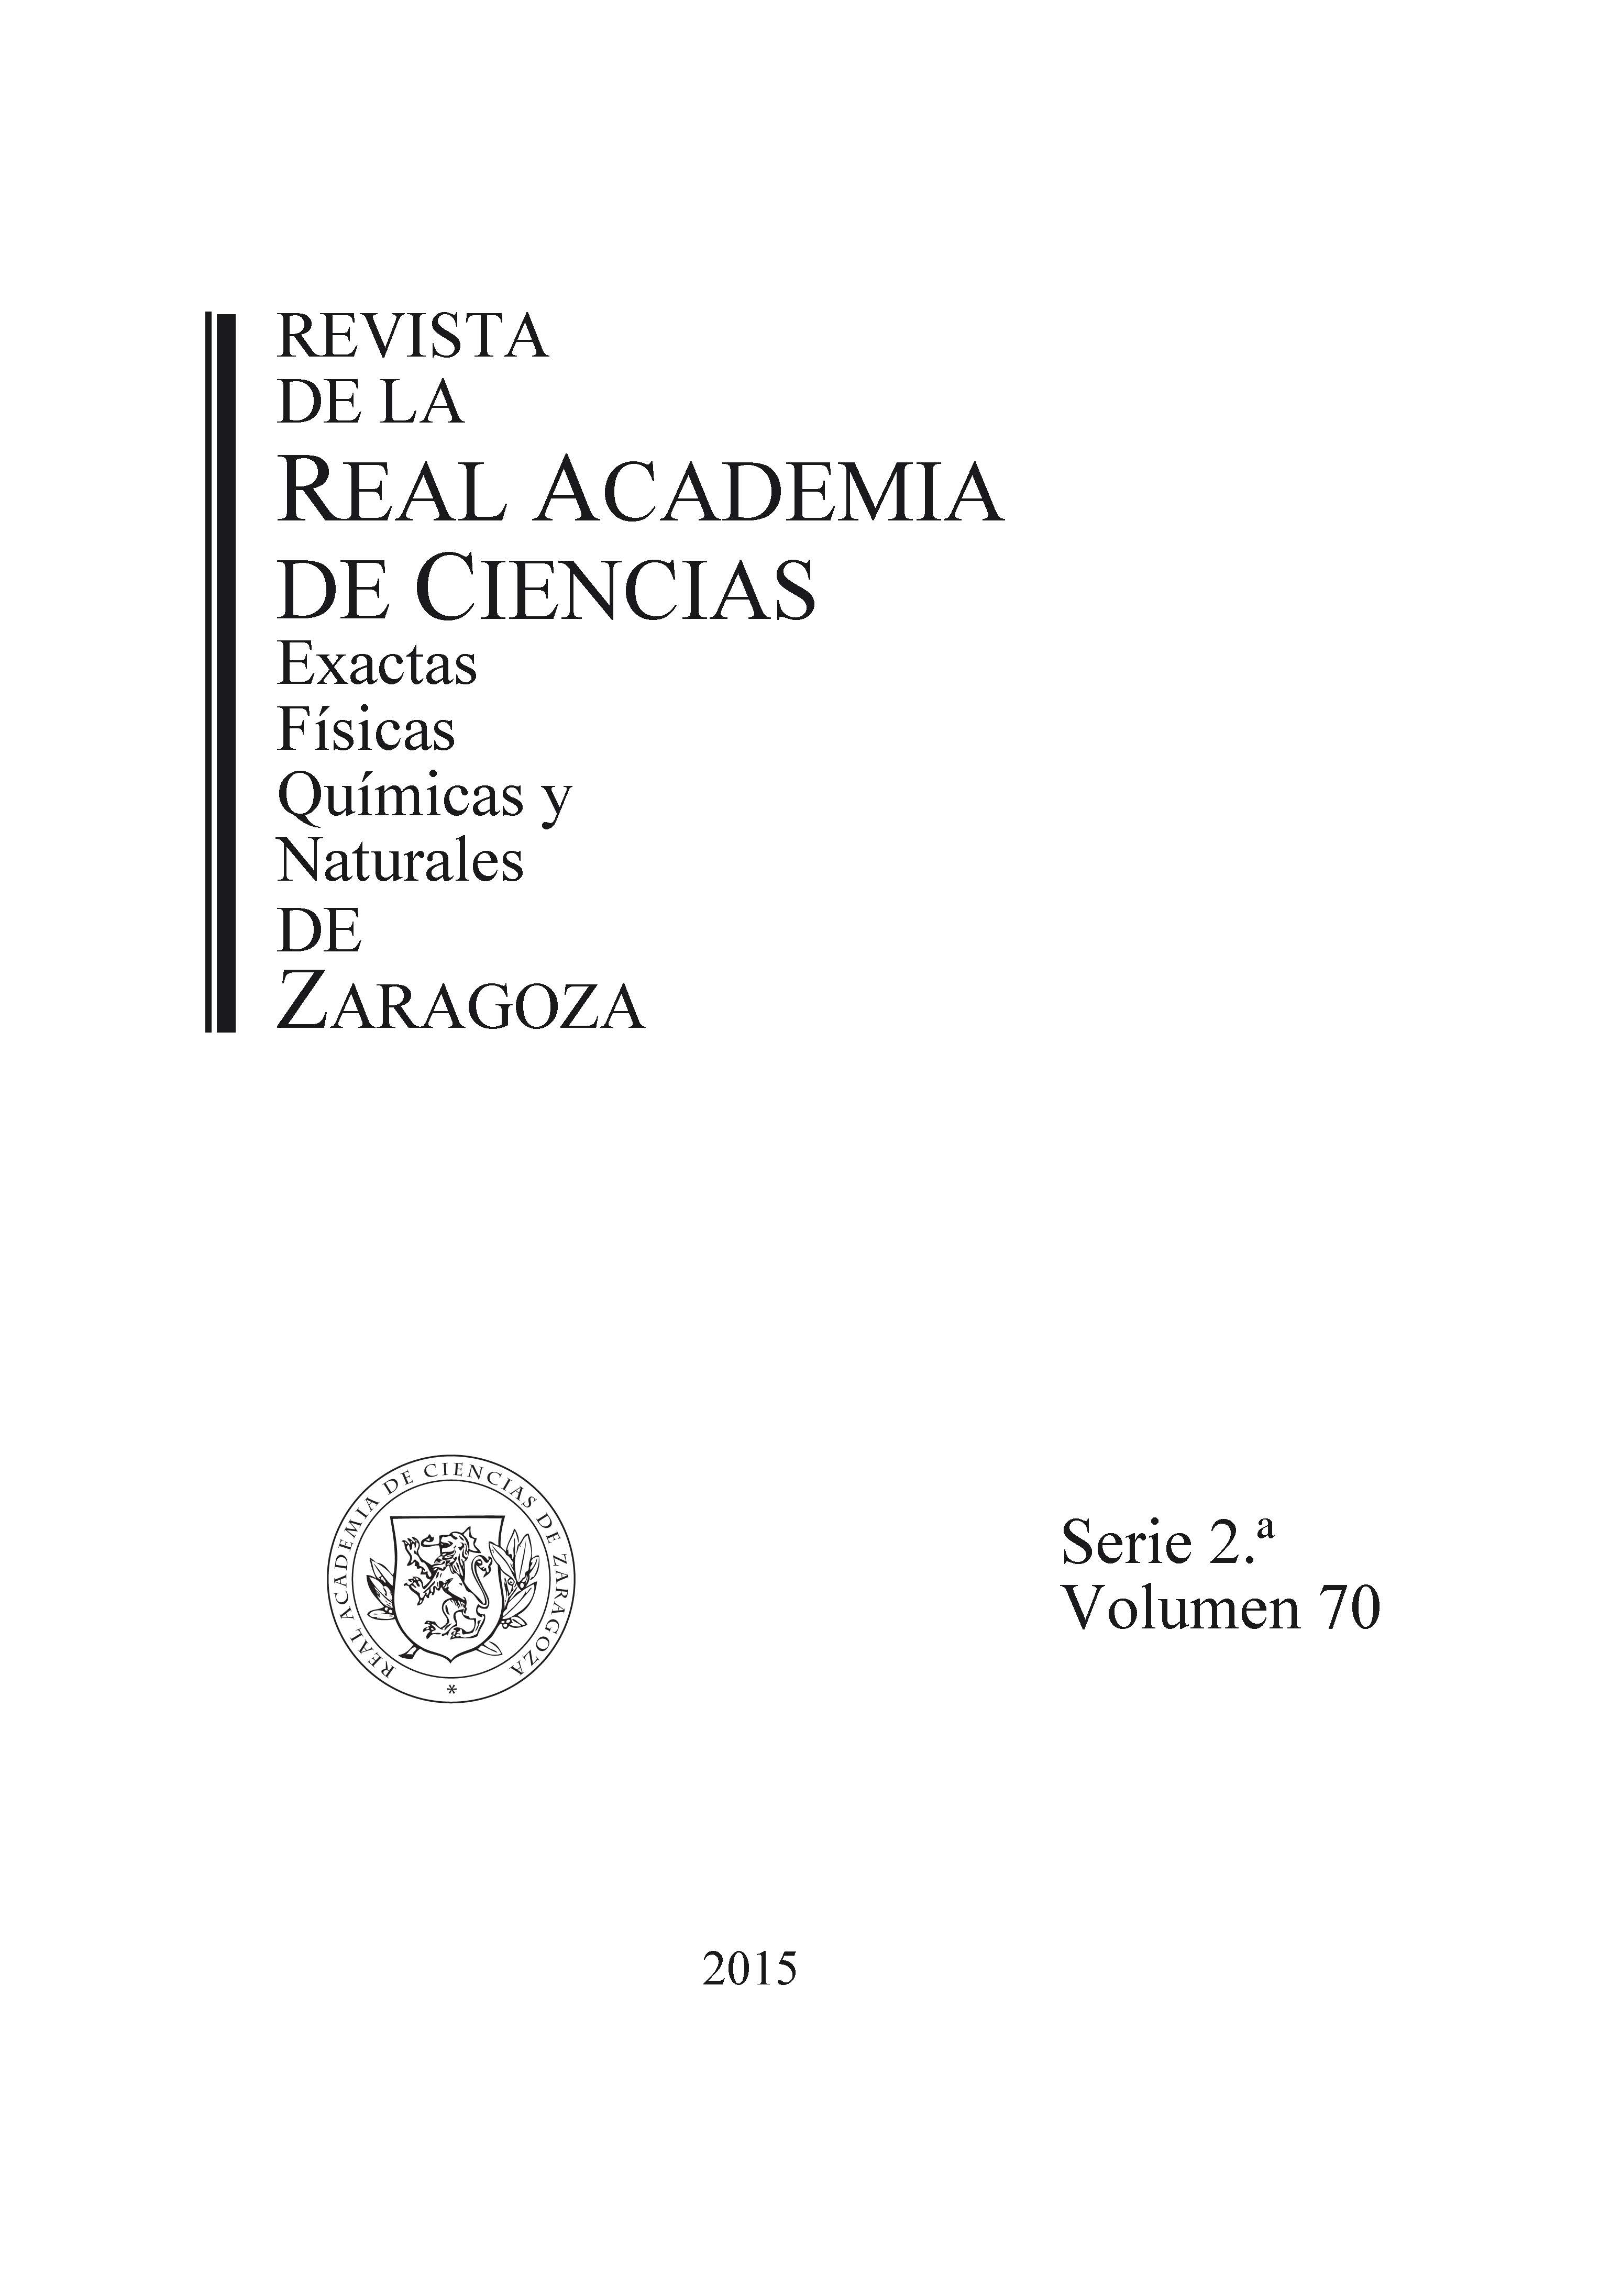 Revista de la Real Academia de Ciencias de Zaragoza